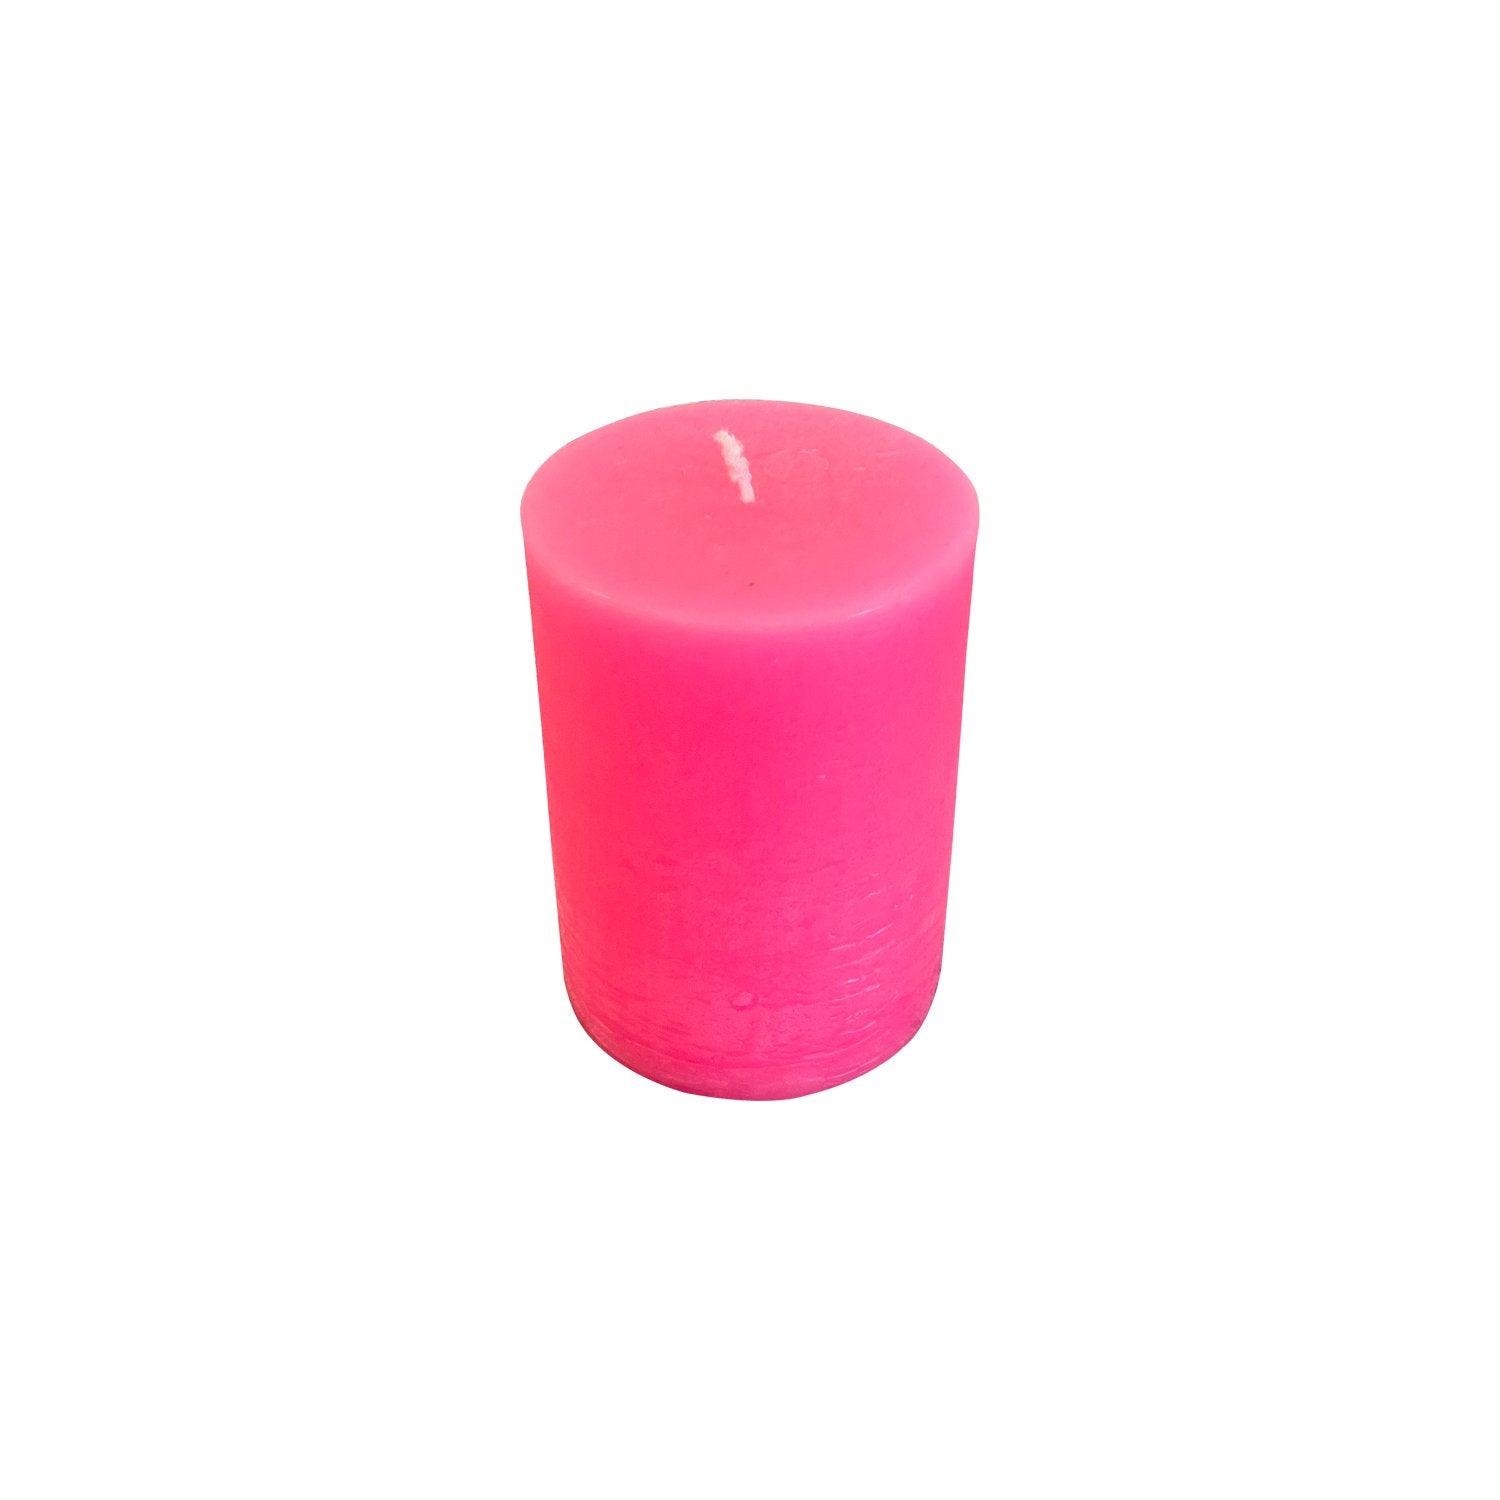 Blok lys - Pink (6cm i diameter)